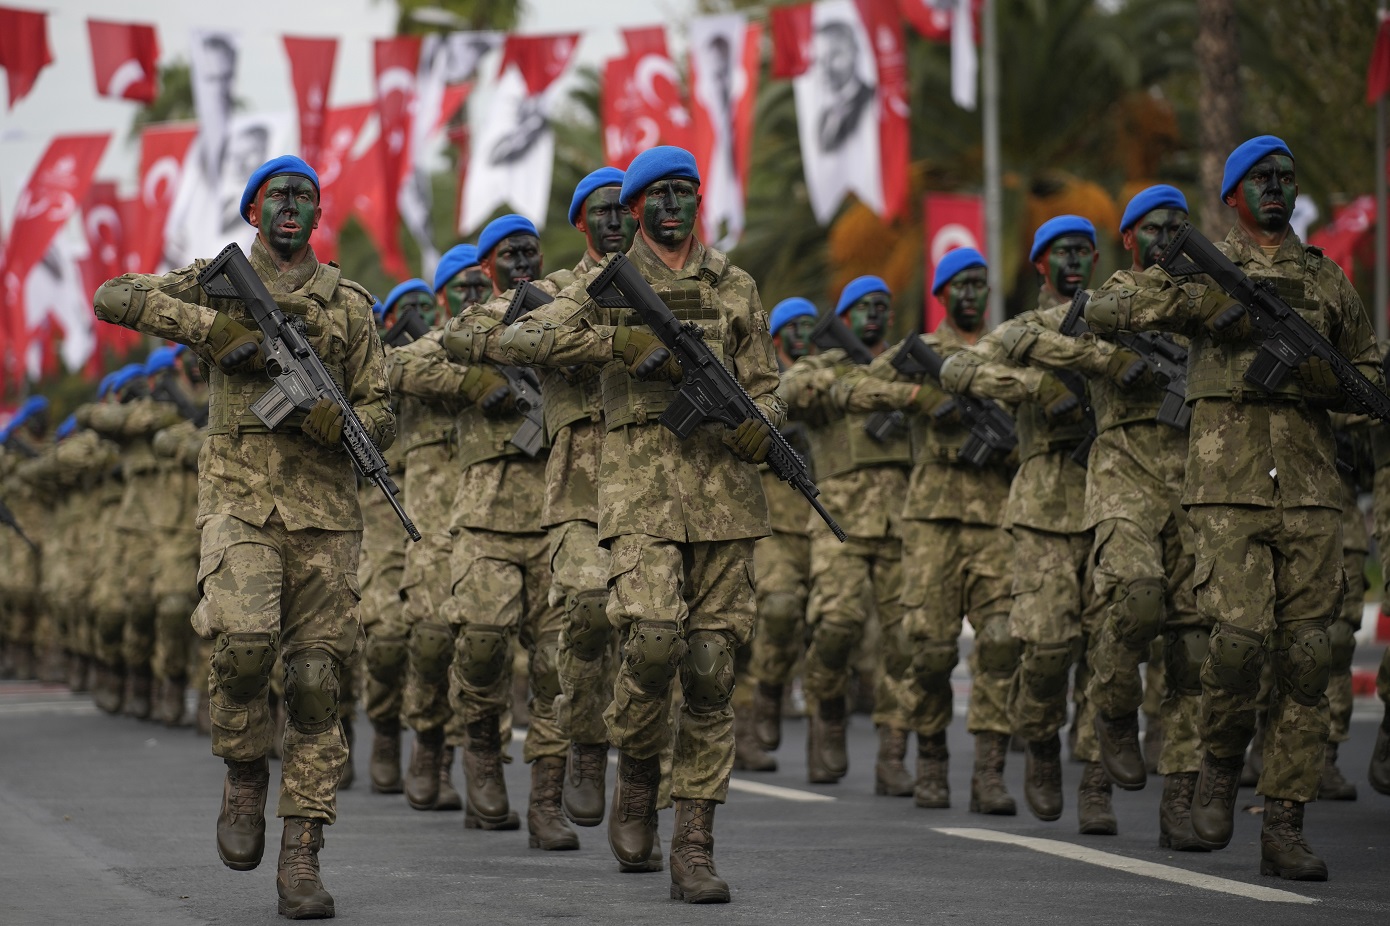 Αλλαγές στην ιεραρχία των τουρκικών Ενόπλων Δυνάμεων αποφασίζει το Ανώτατο Στρατιωτικό Συμβούλιο